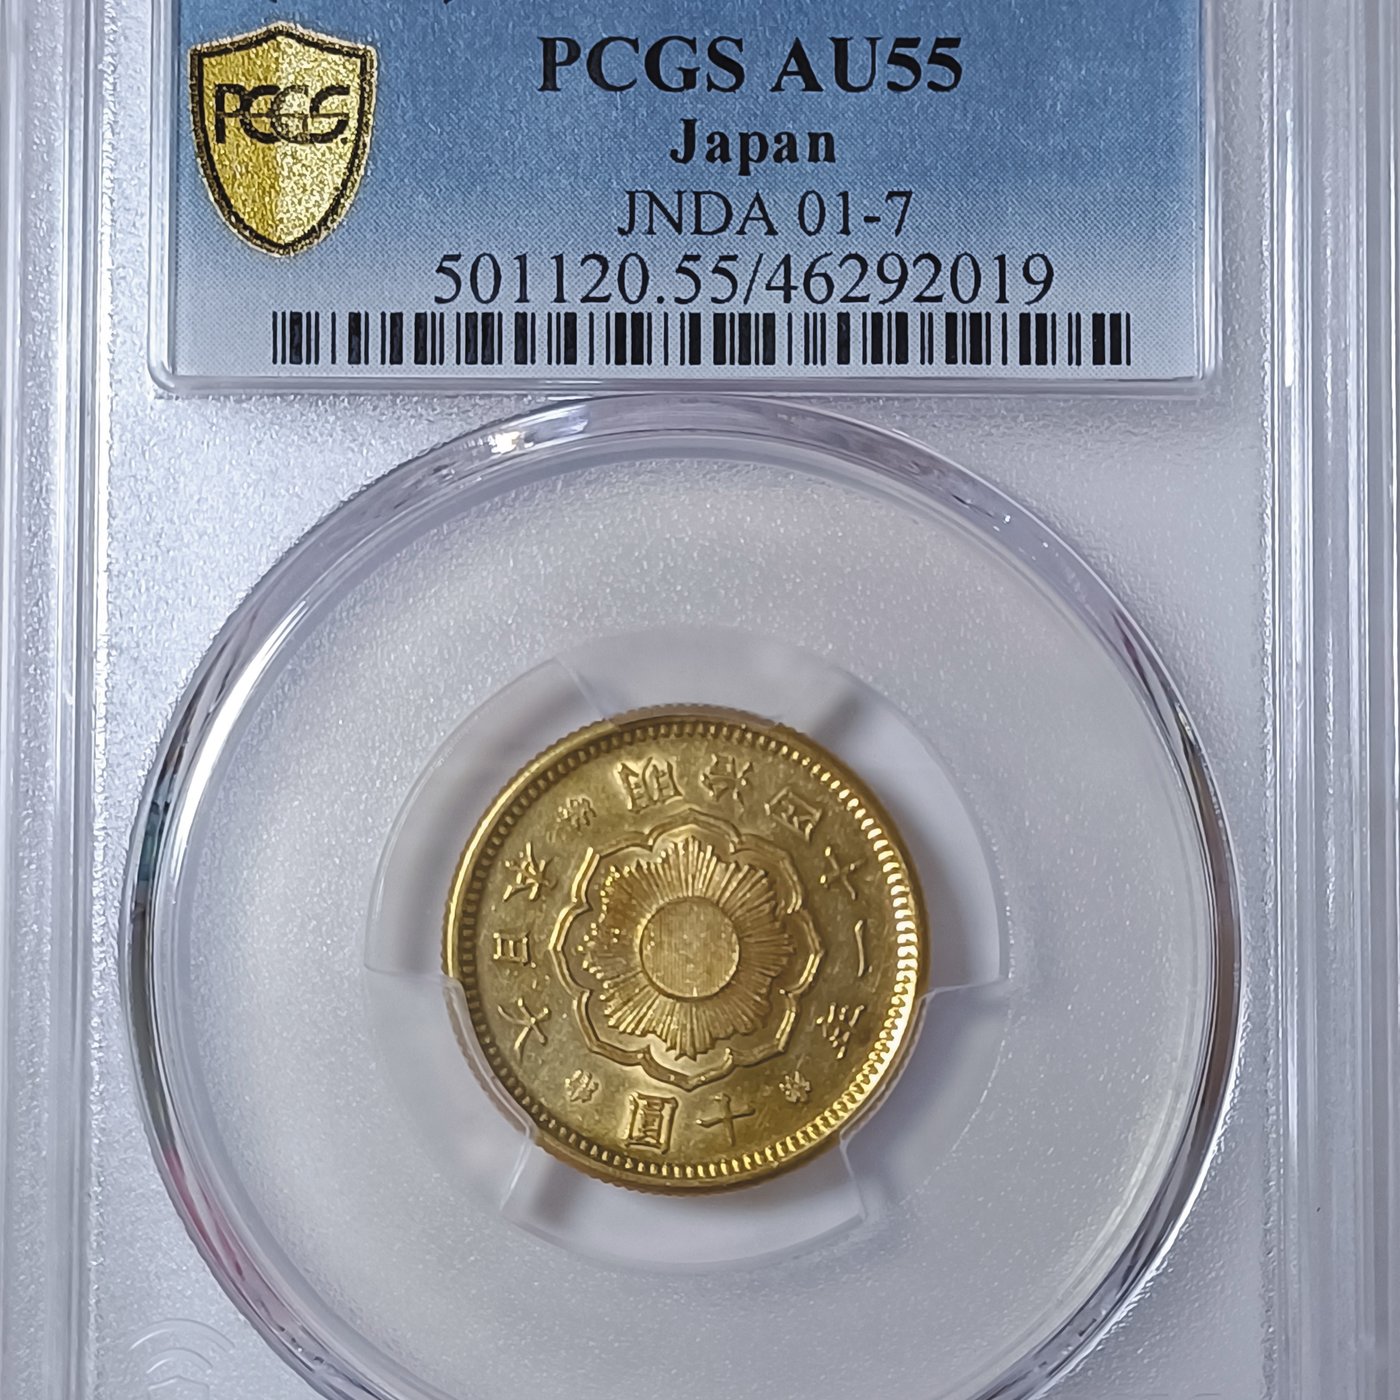 明治四十一年日本十圓金幣PCGS AU55 稀少[認證編號46292019 